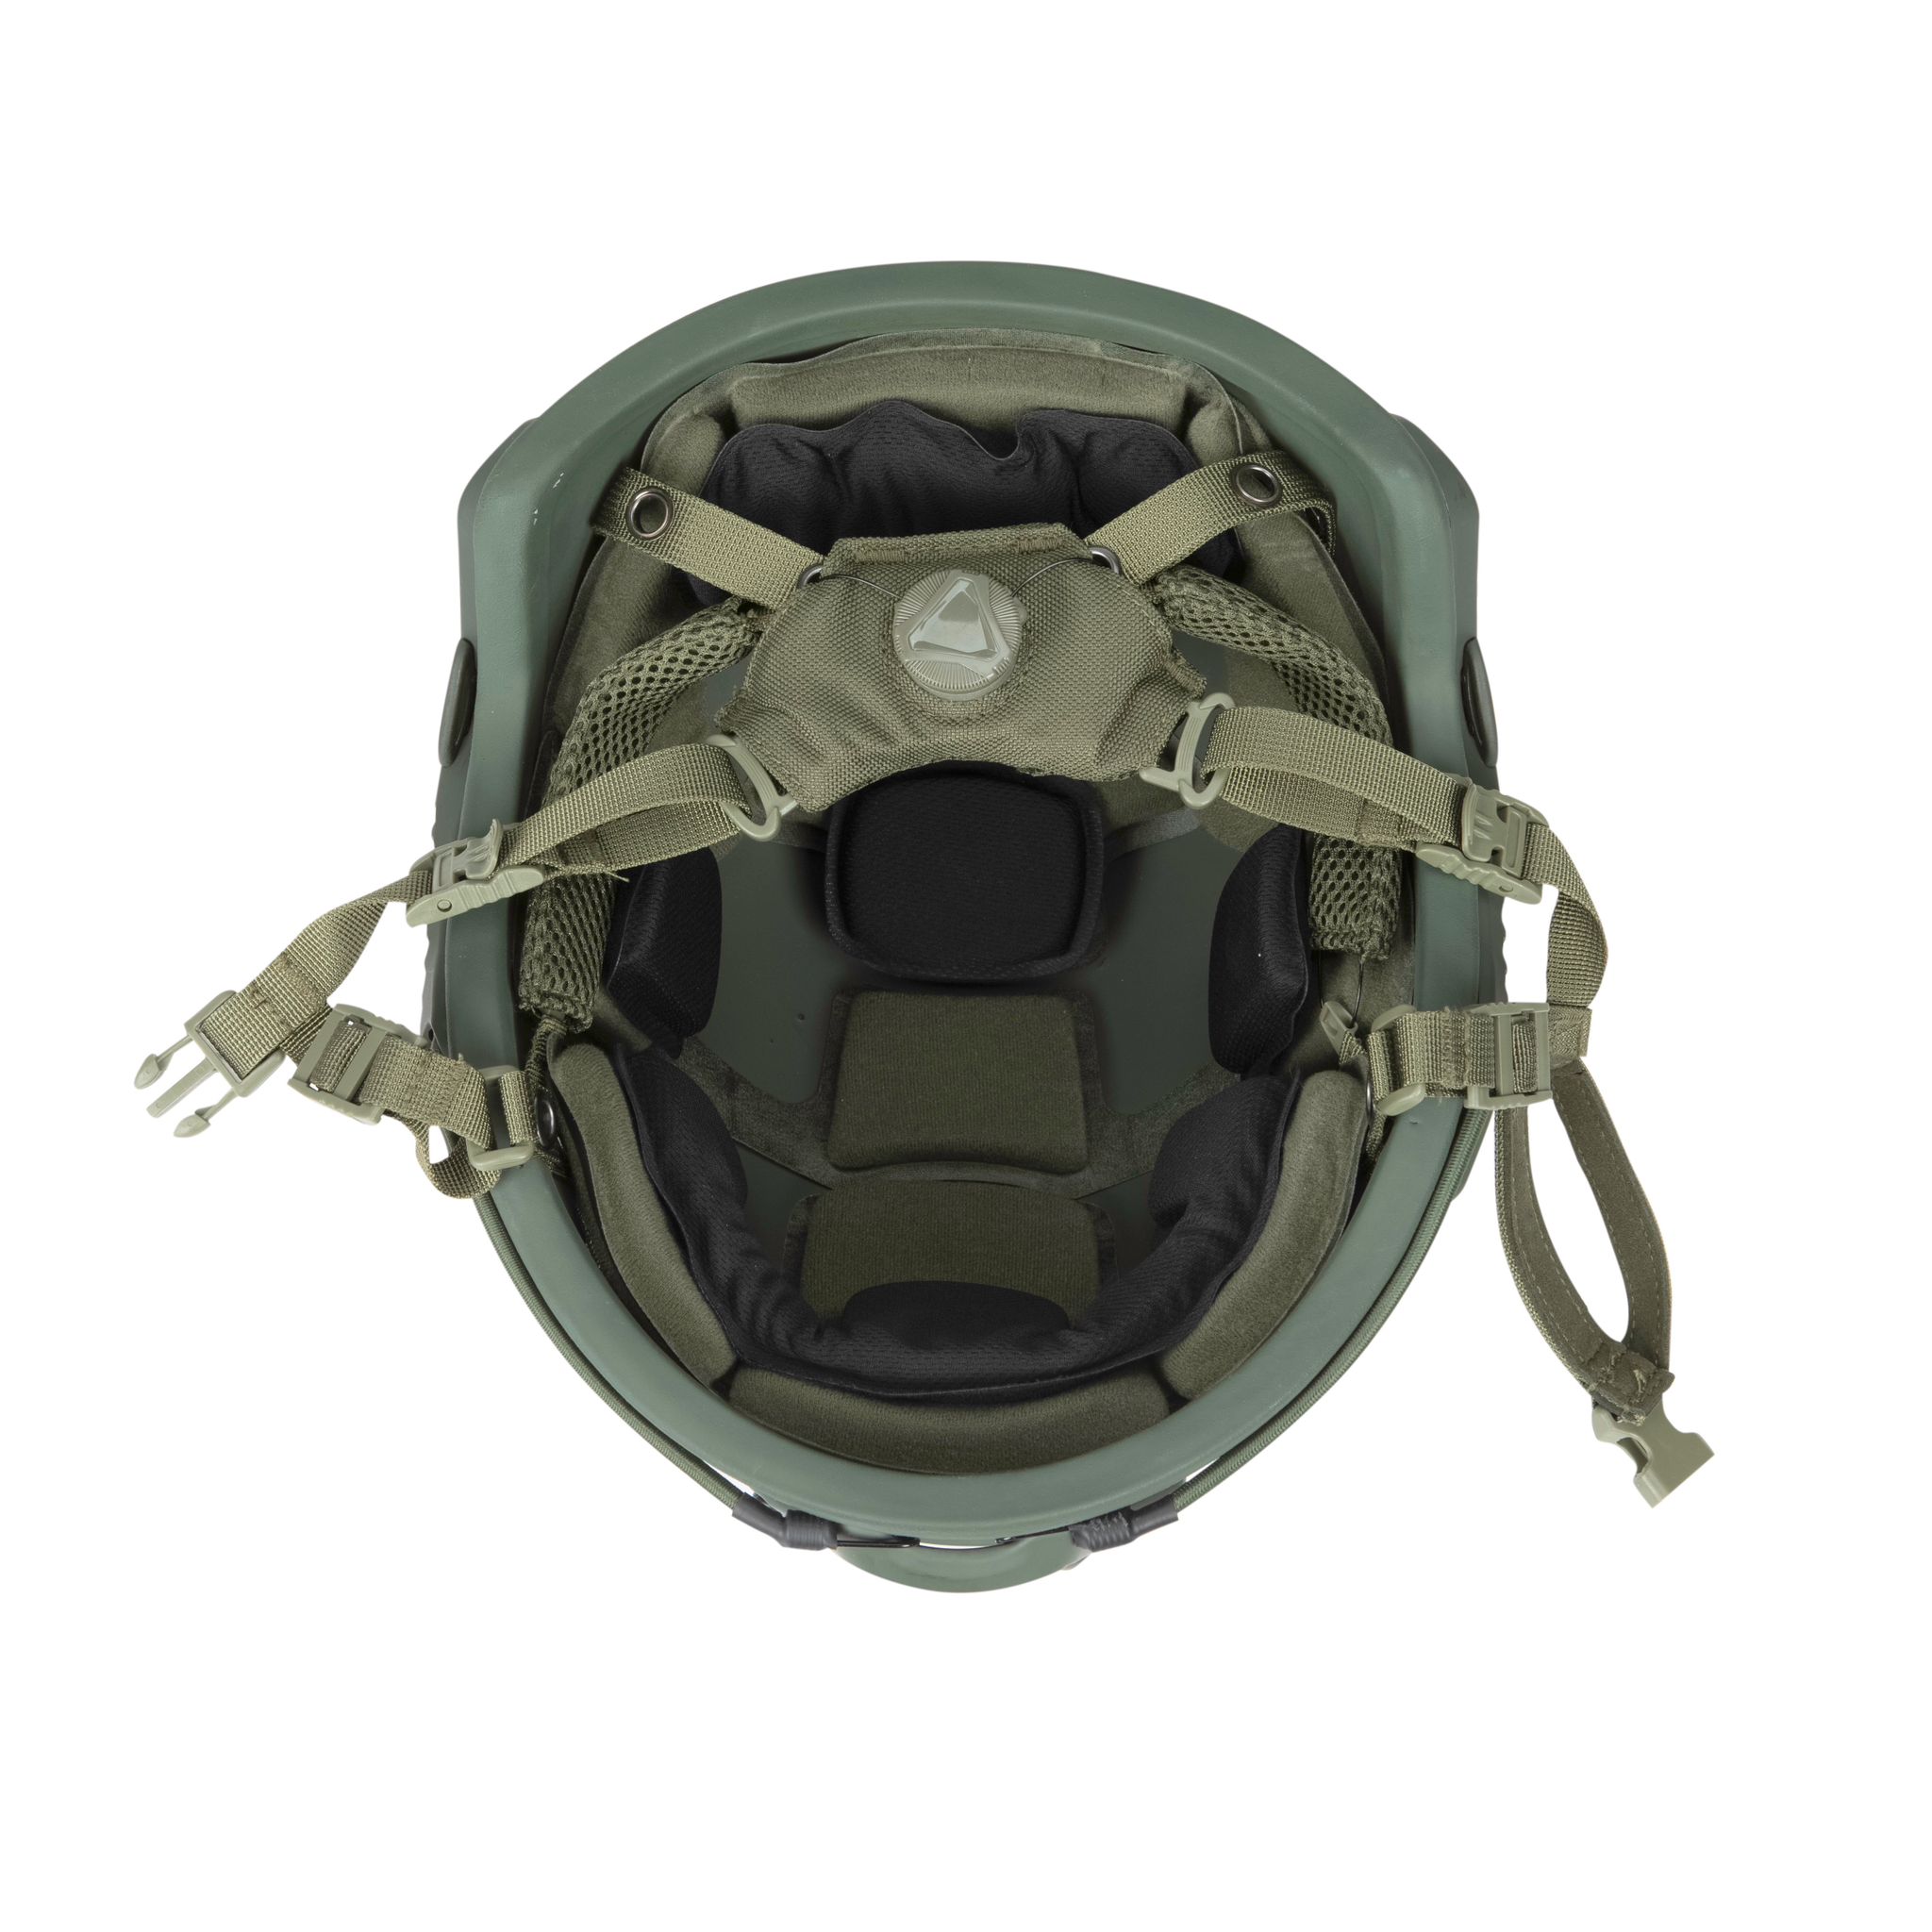 MICH Ballistic Helmet 3A